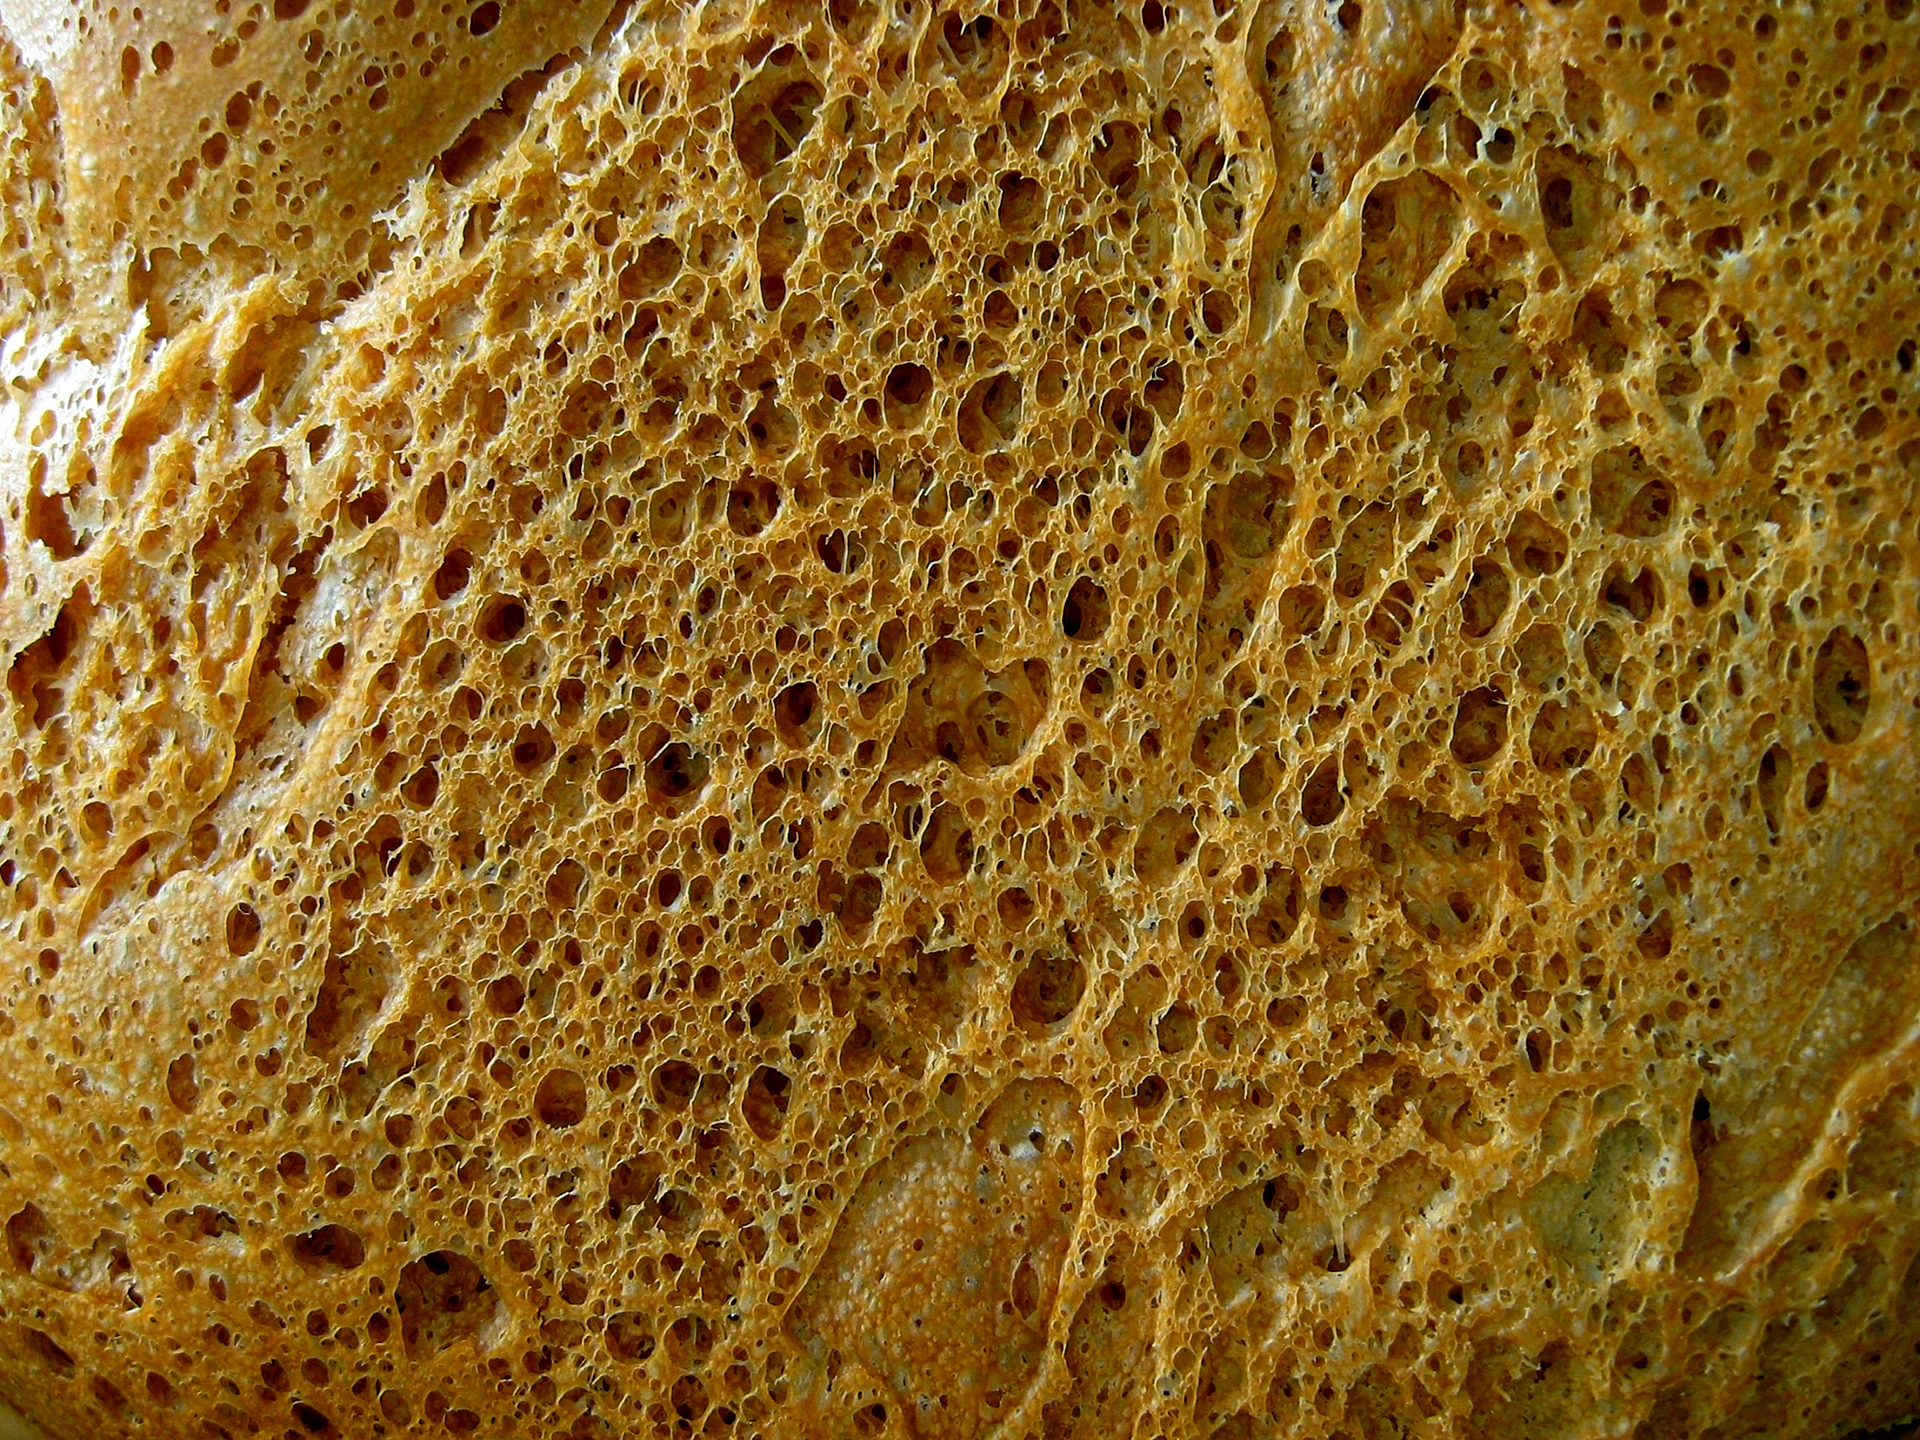 Текстура хлеба